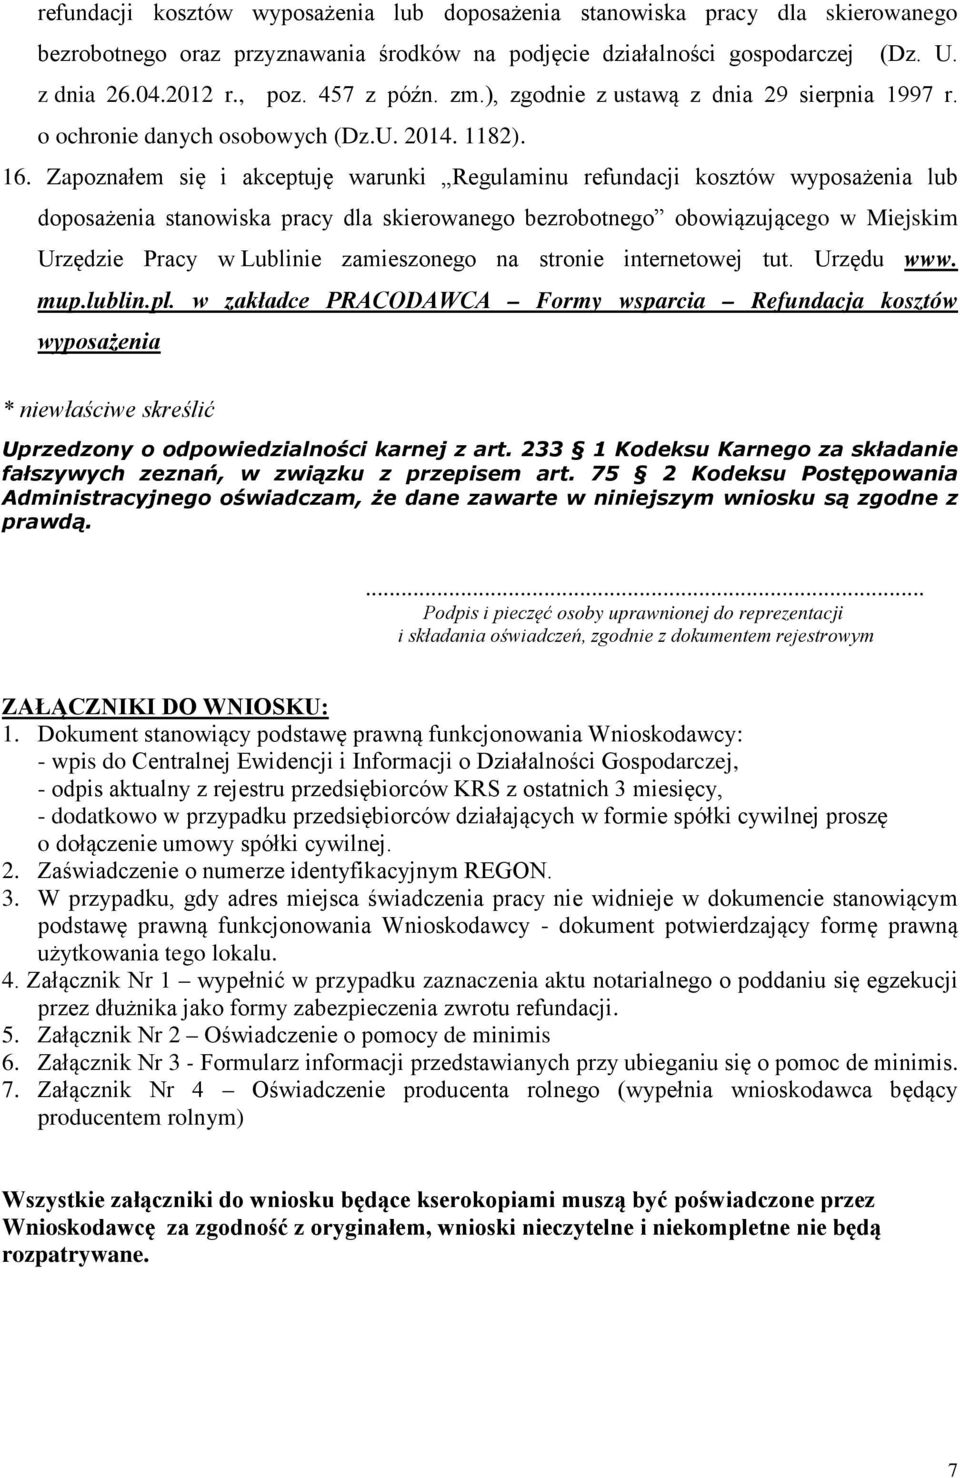 Zapoznałem się i akceptuję warunki Regulaminu refundacji kosztów wyposażenia lub doposażenia stanowiska pracy dla skierowanego bezrobotnego obowiązującego w Miejskim Urzędzie Pracy w Lublinie